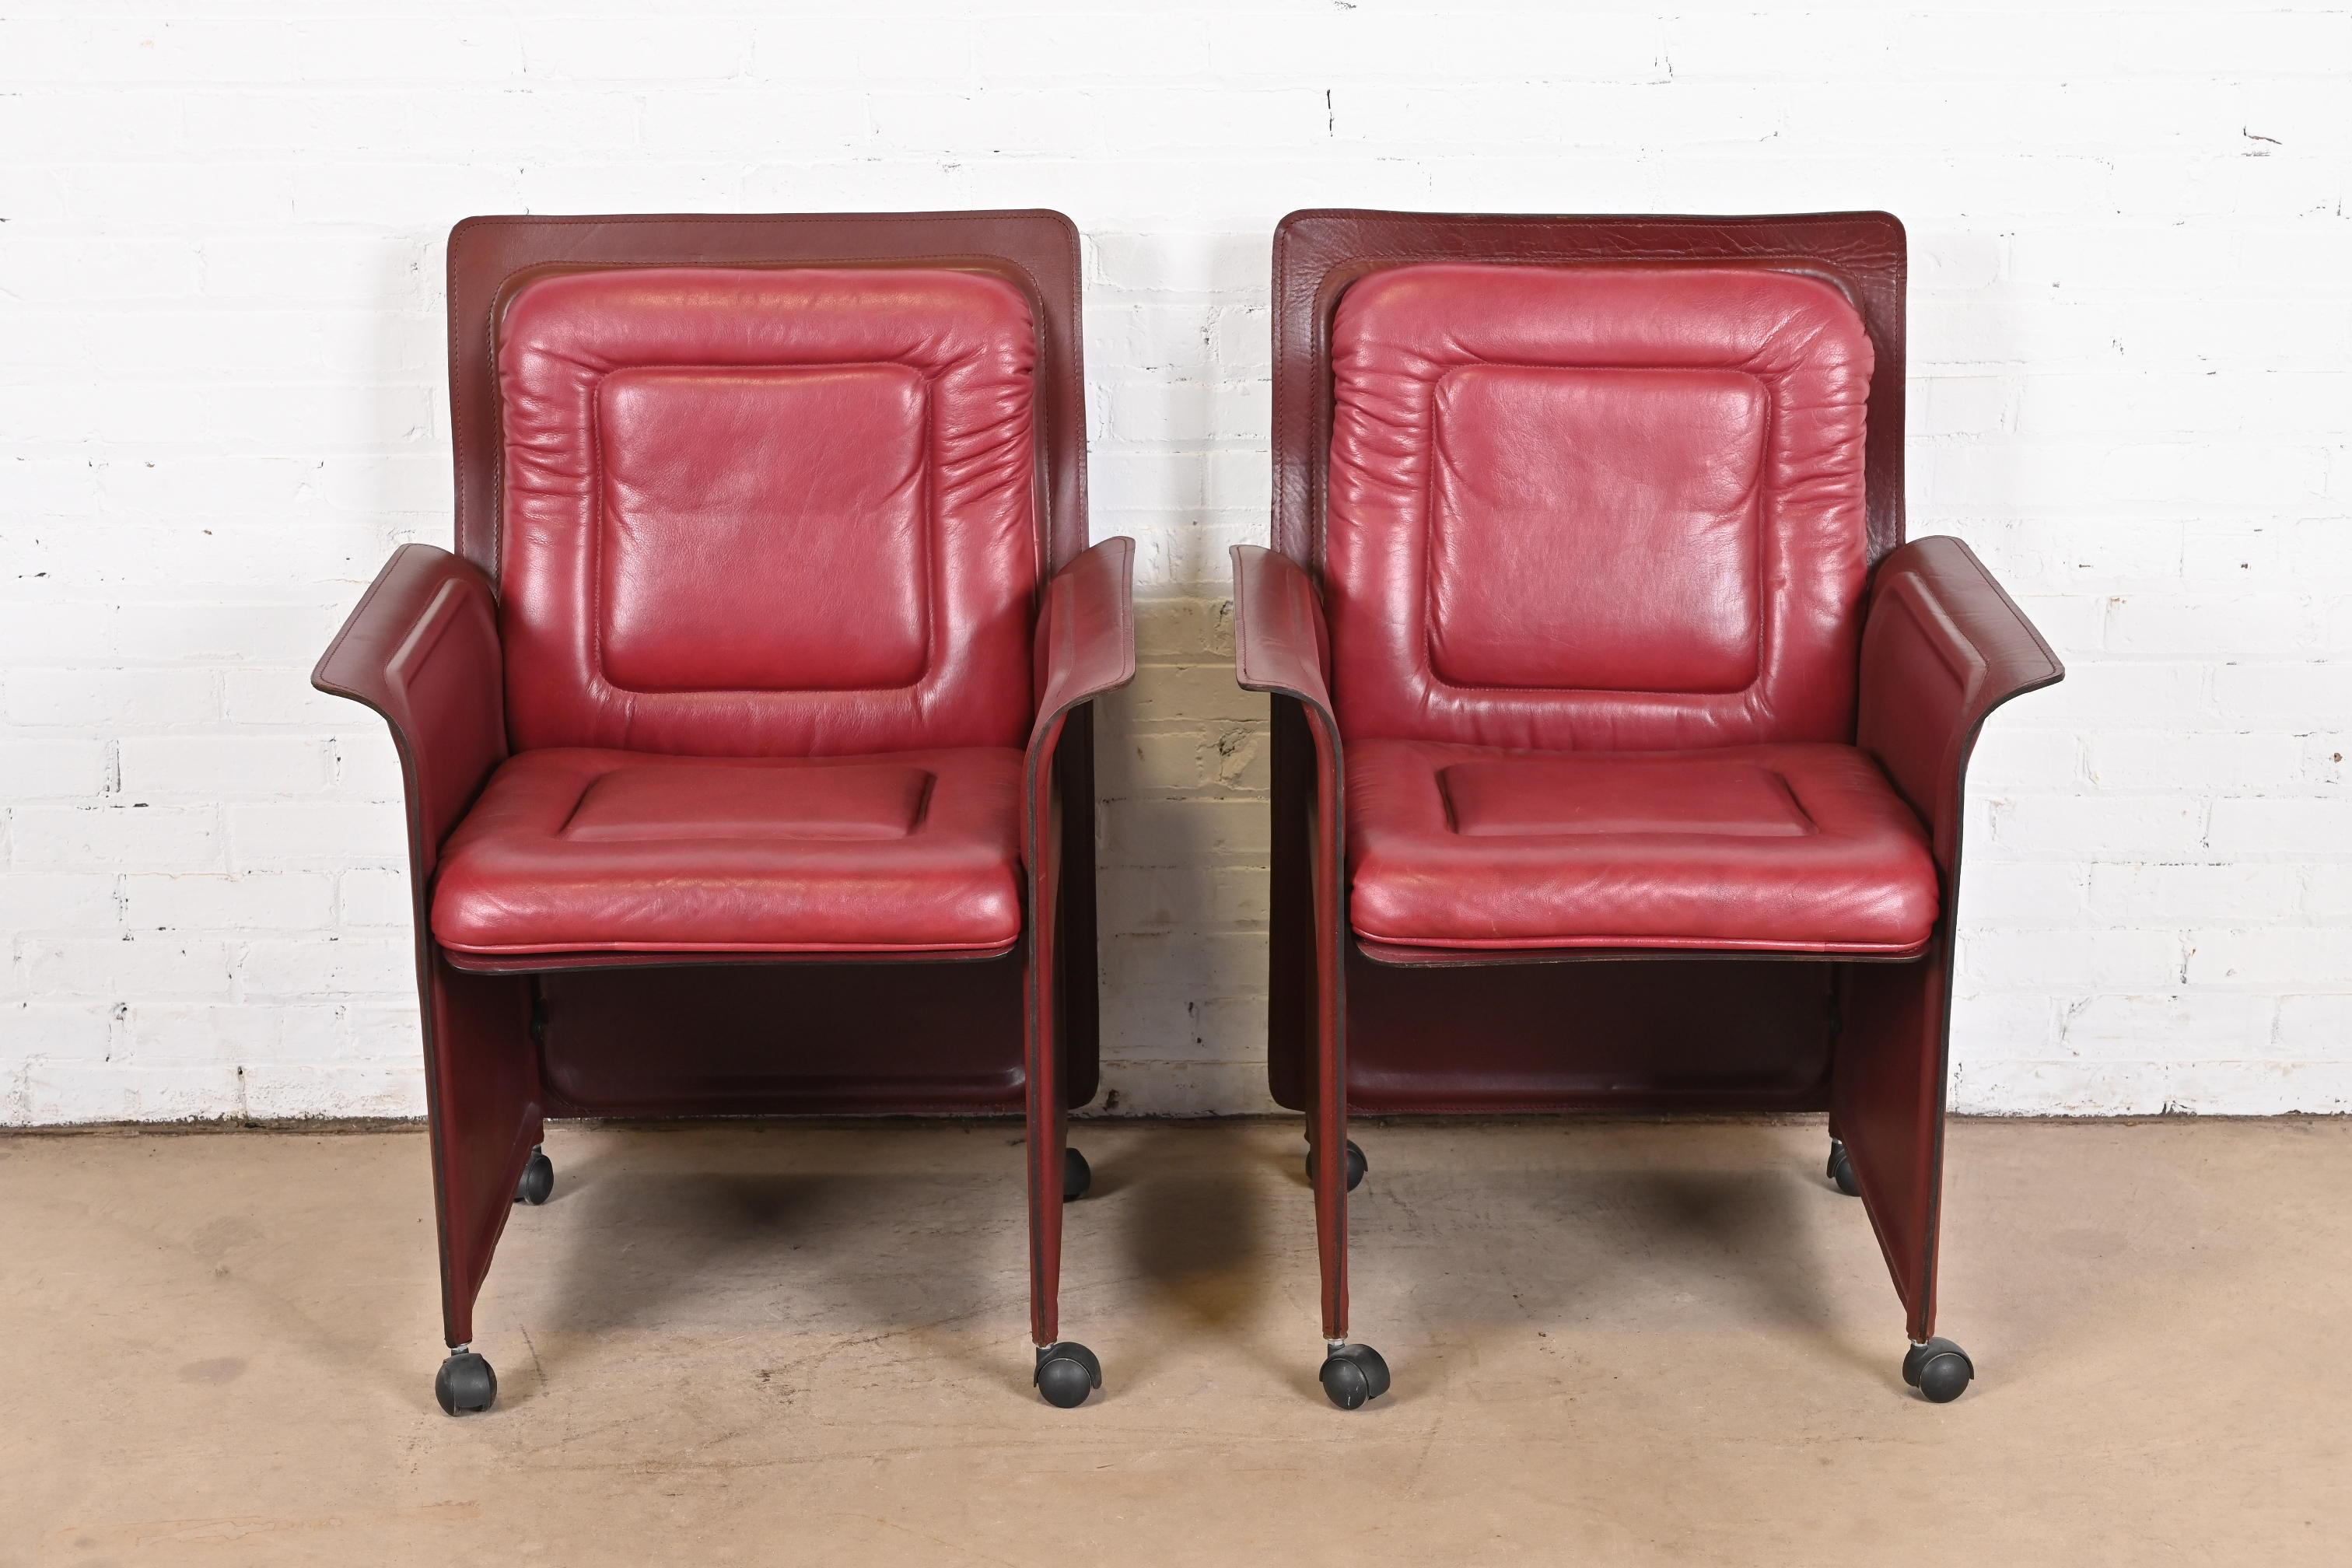 Ein wunderschönes Paar lederbezogene Sessel, Clubsessel oder Loungesessel im Stil der Postmoderne oder der Jahrhundertmitte

Von Guido Faleschini für i4 Mariani, 